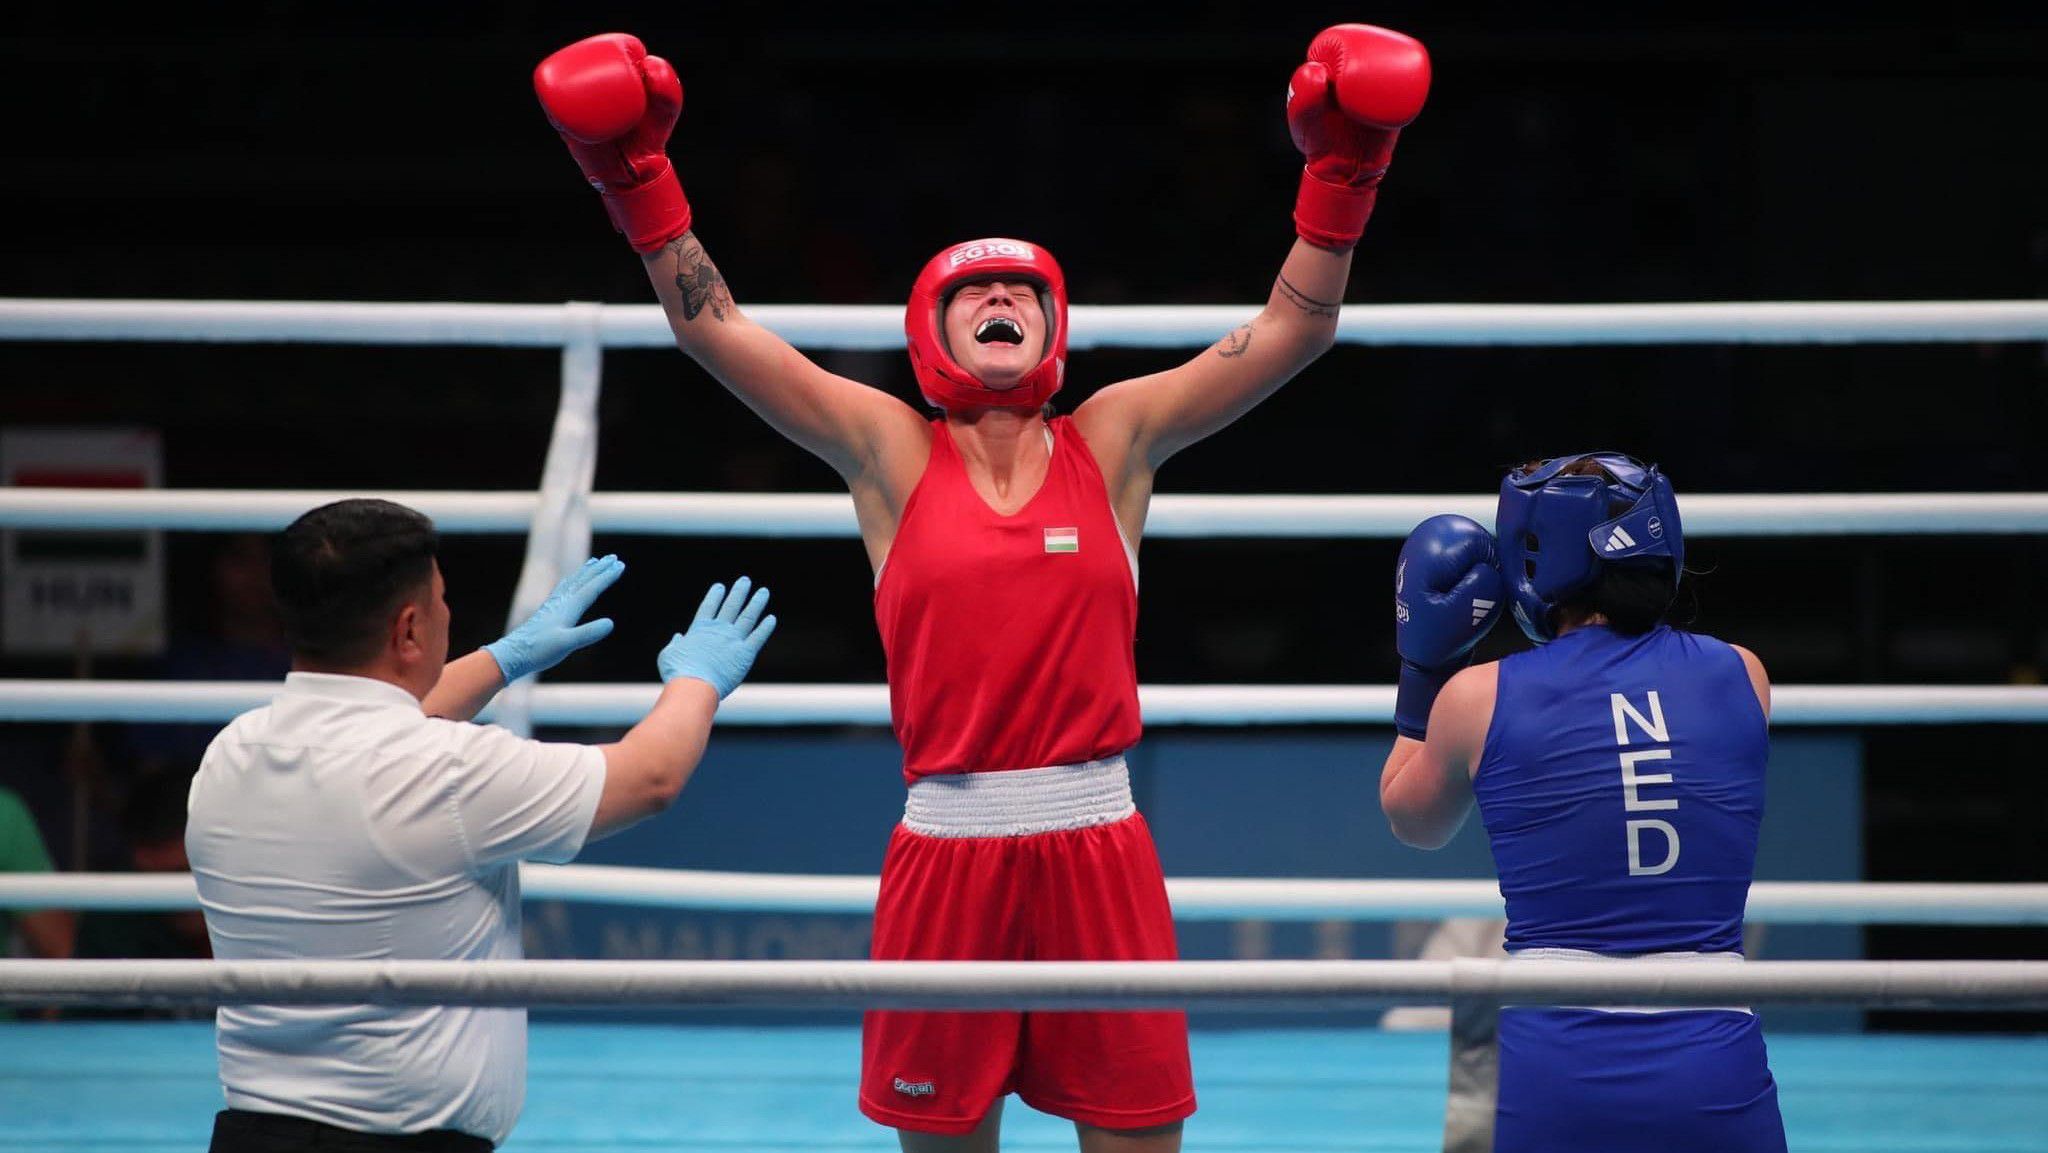 Ezzel  a külsővel készül az ellenfelekre a sporttörténet első magyar női bokszolimpikonja